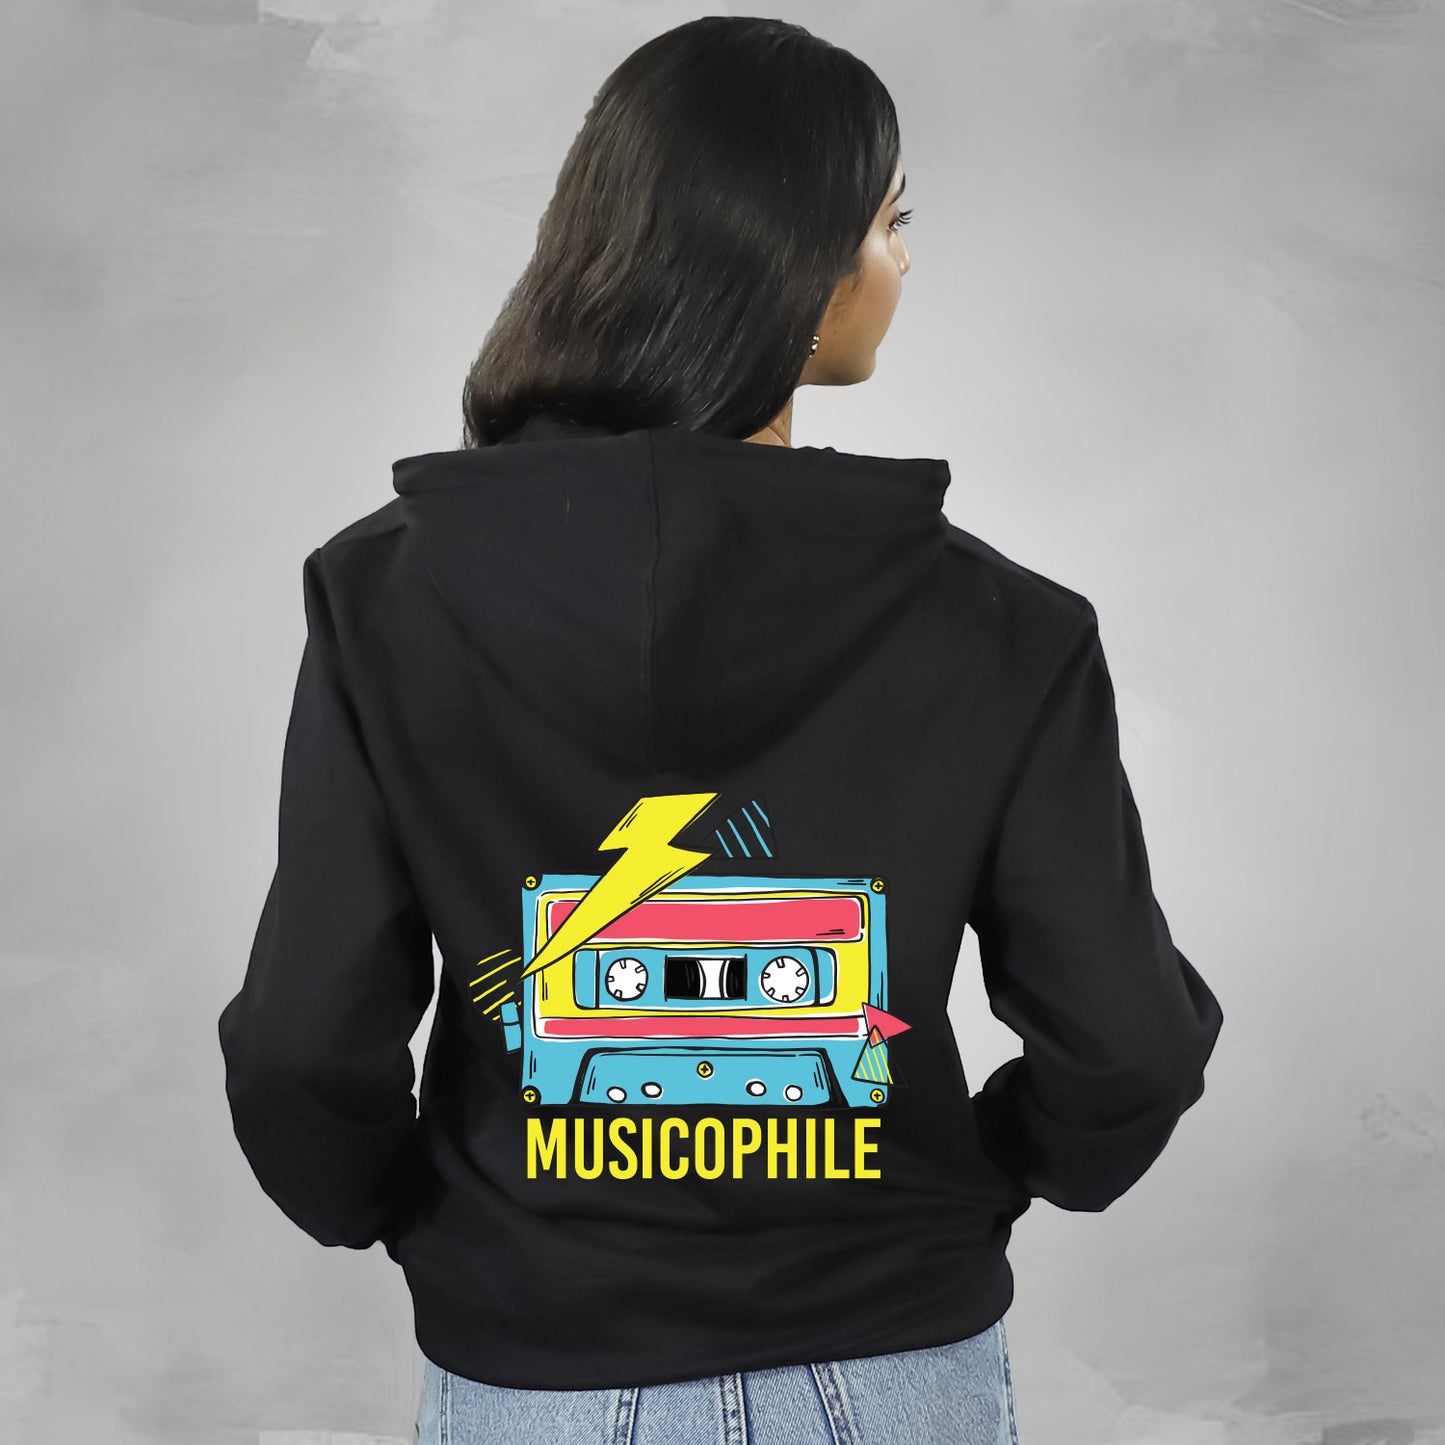 Musicophile - Hoodie